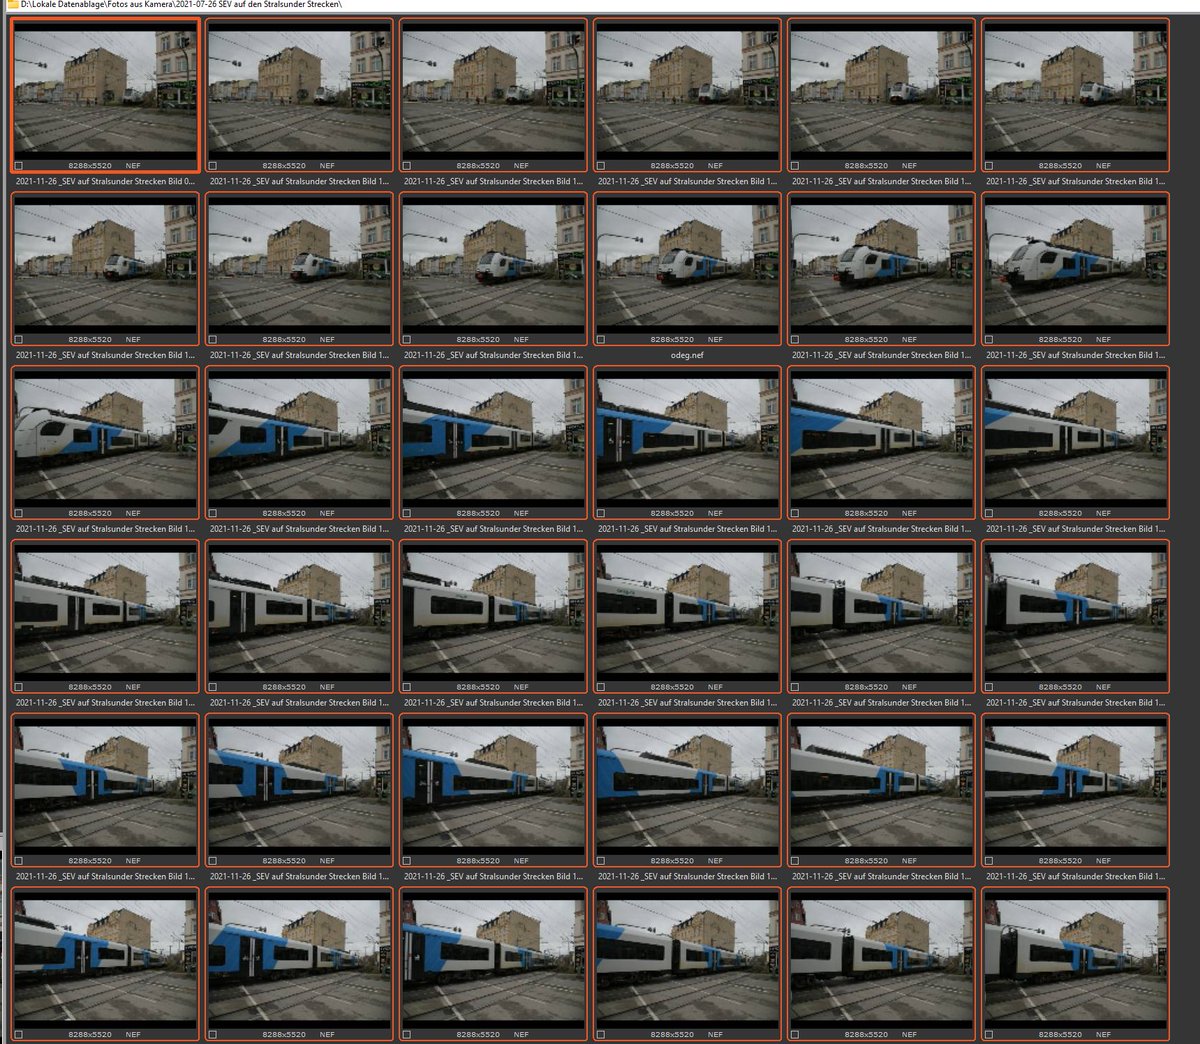 Serienaufnahme von einem #DesiroML an einem BÜ in Stralsund: 48 Auifnahmen (um möglichst alle Fahrzeugnummern zu erkennen) 😂😂

Ich muss gerade an die Analogfotografie denken, ein Diafilm #ORWOCHROM UT 21 hatte 36 Aufnahmen, kostete ca. 8 Mark/DDR 😱
@TramFauli @dor_schens